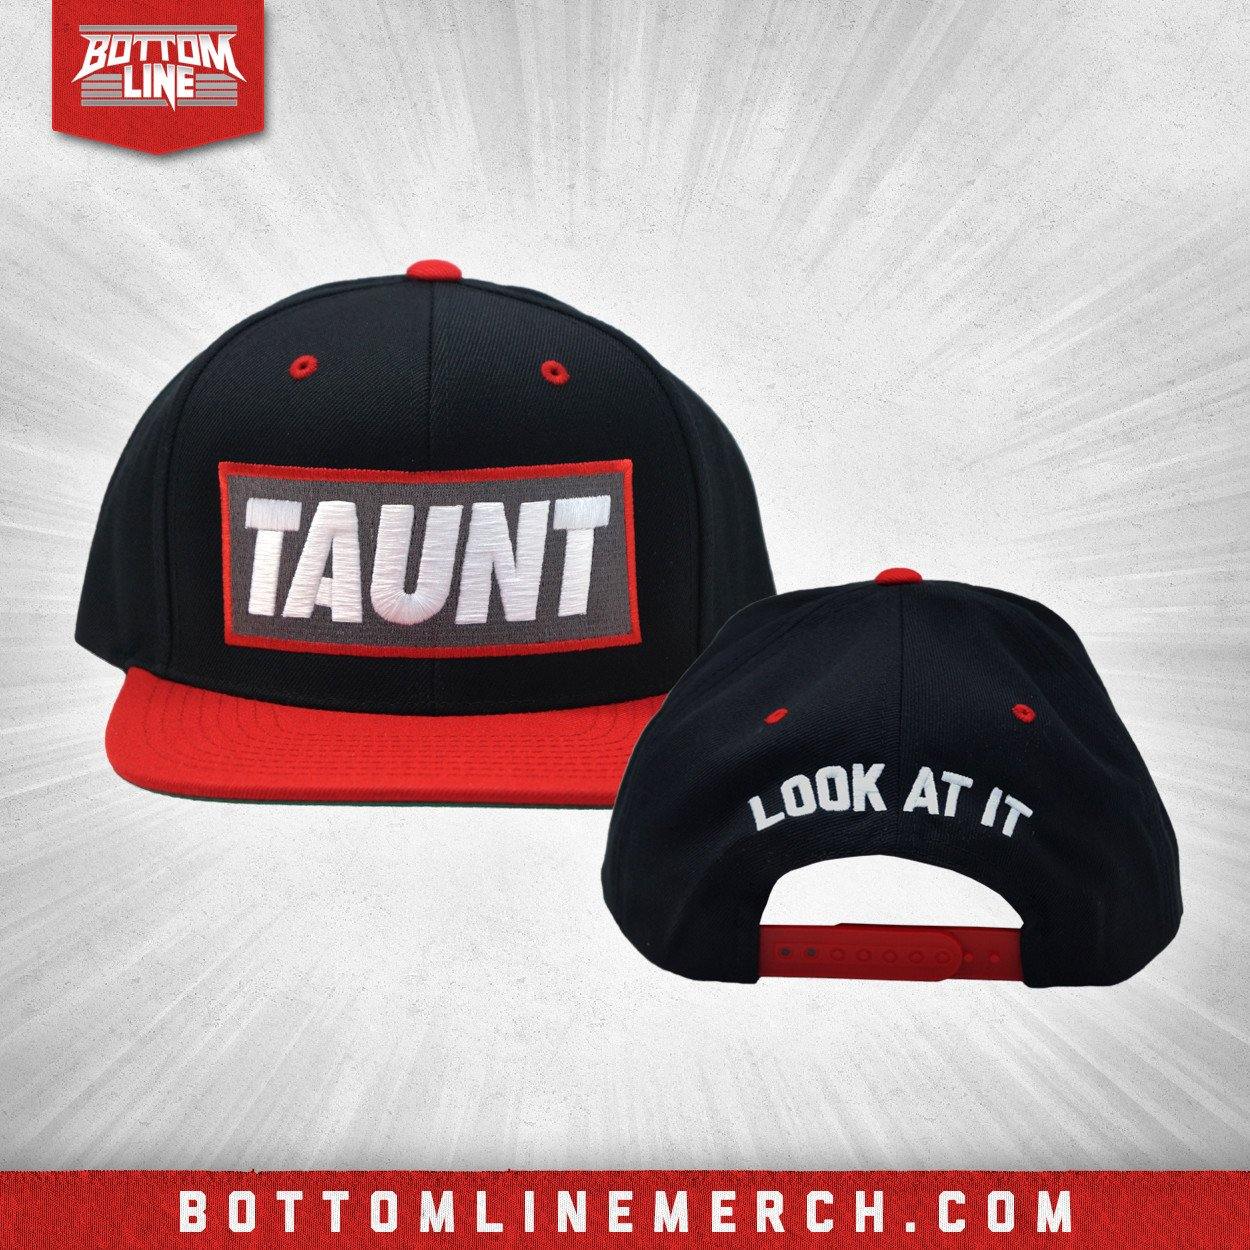 Buy Now – David Starr "Taunt" Snapback – Wrestler & Wrestling Merch – Bottom Line